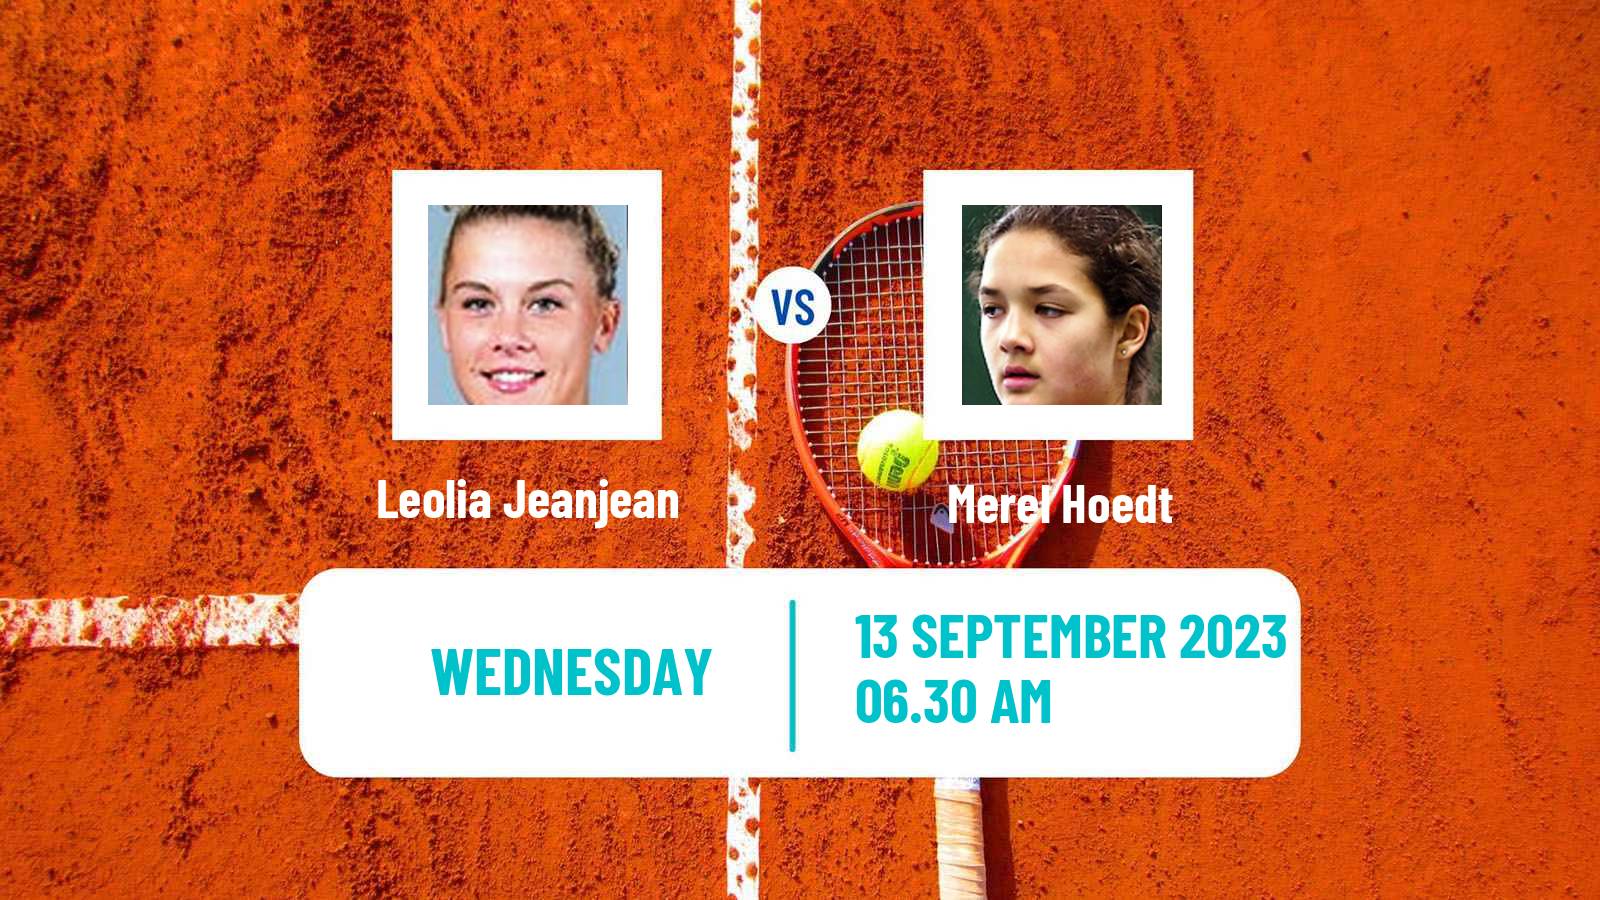 Tennis ITF W40 Skopje Women Leolia Jeanjean - Merel Hoedt